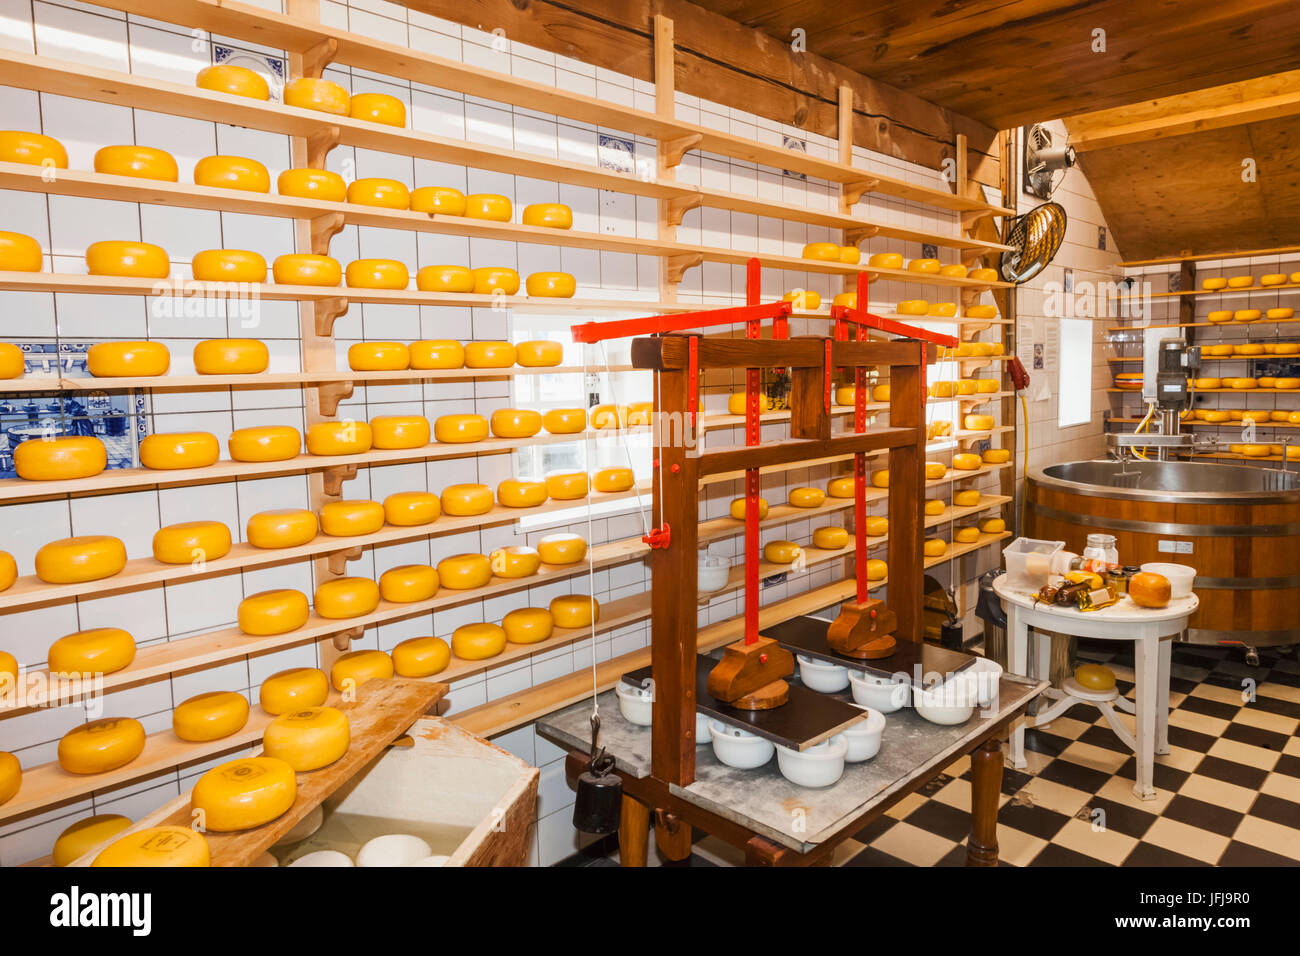 Europe, Netherlands, Zaandam, Zaanse Schans, Catharina Hoeve Cheese and Souvenir Shop Stock Photo